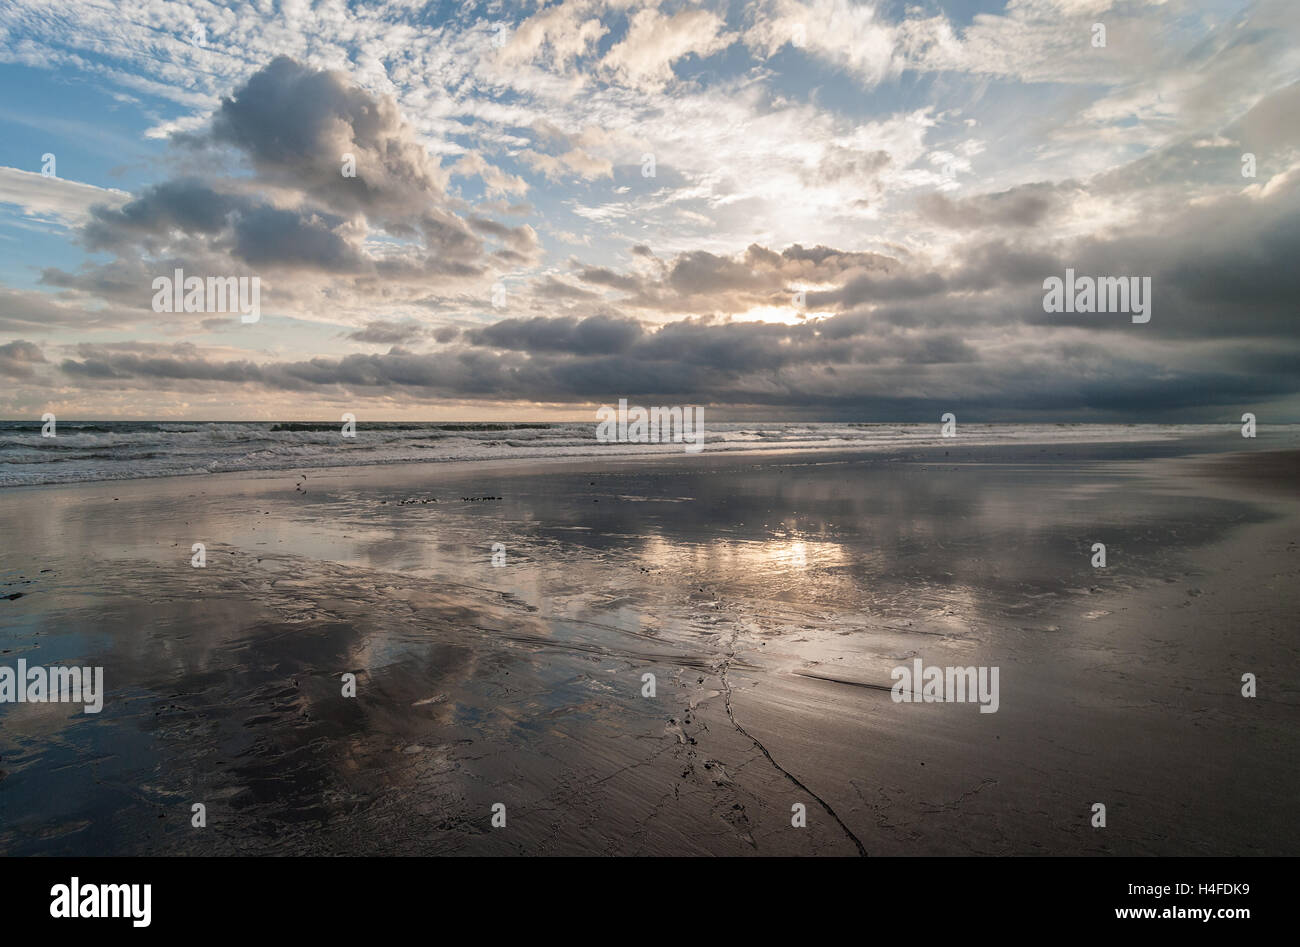 Spiaggia tropicale e cloudscape riflessa sulla sabbia bagnata. Immagine presa nella parte occidentale di Panama, Costa del Pacifico. Foto Stock